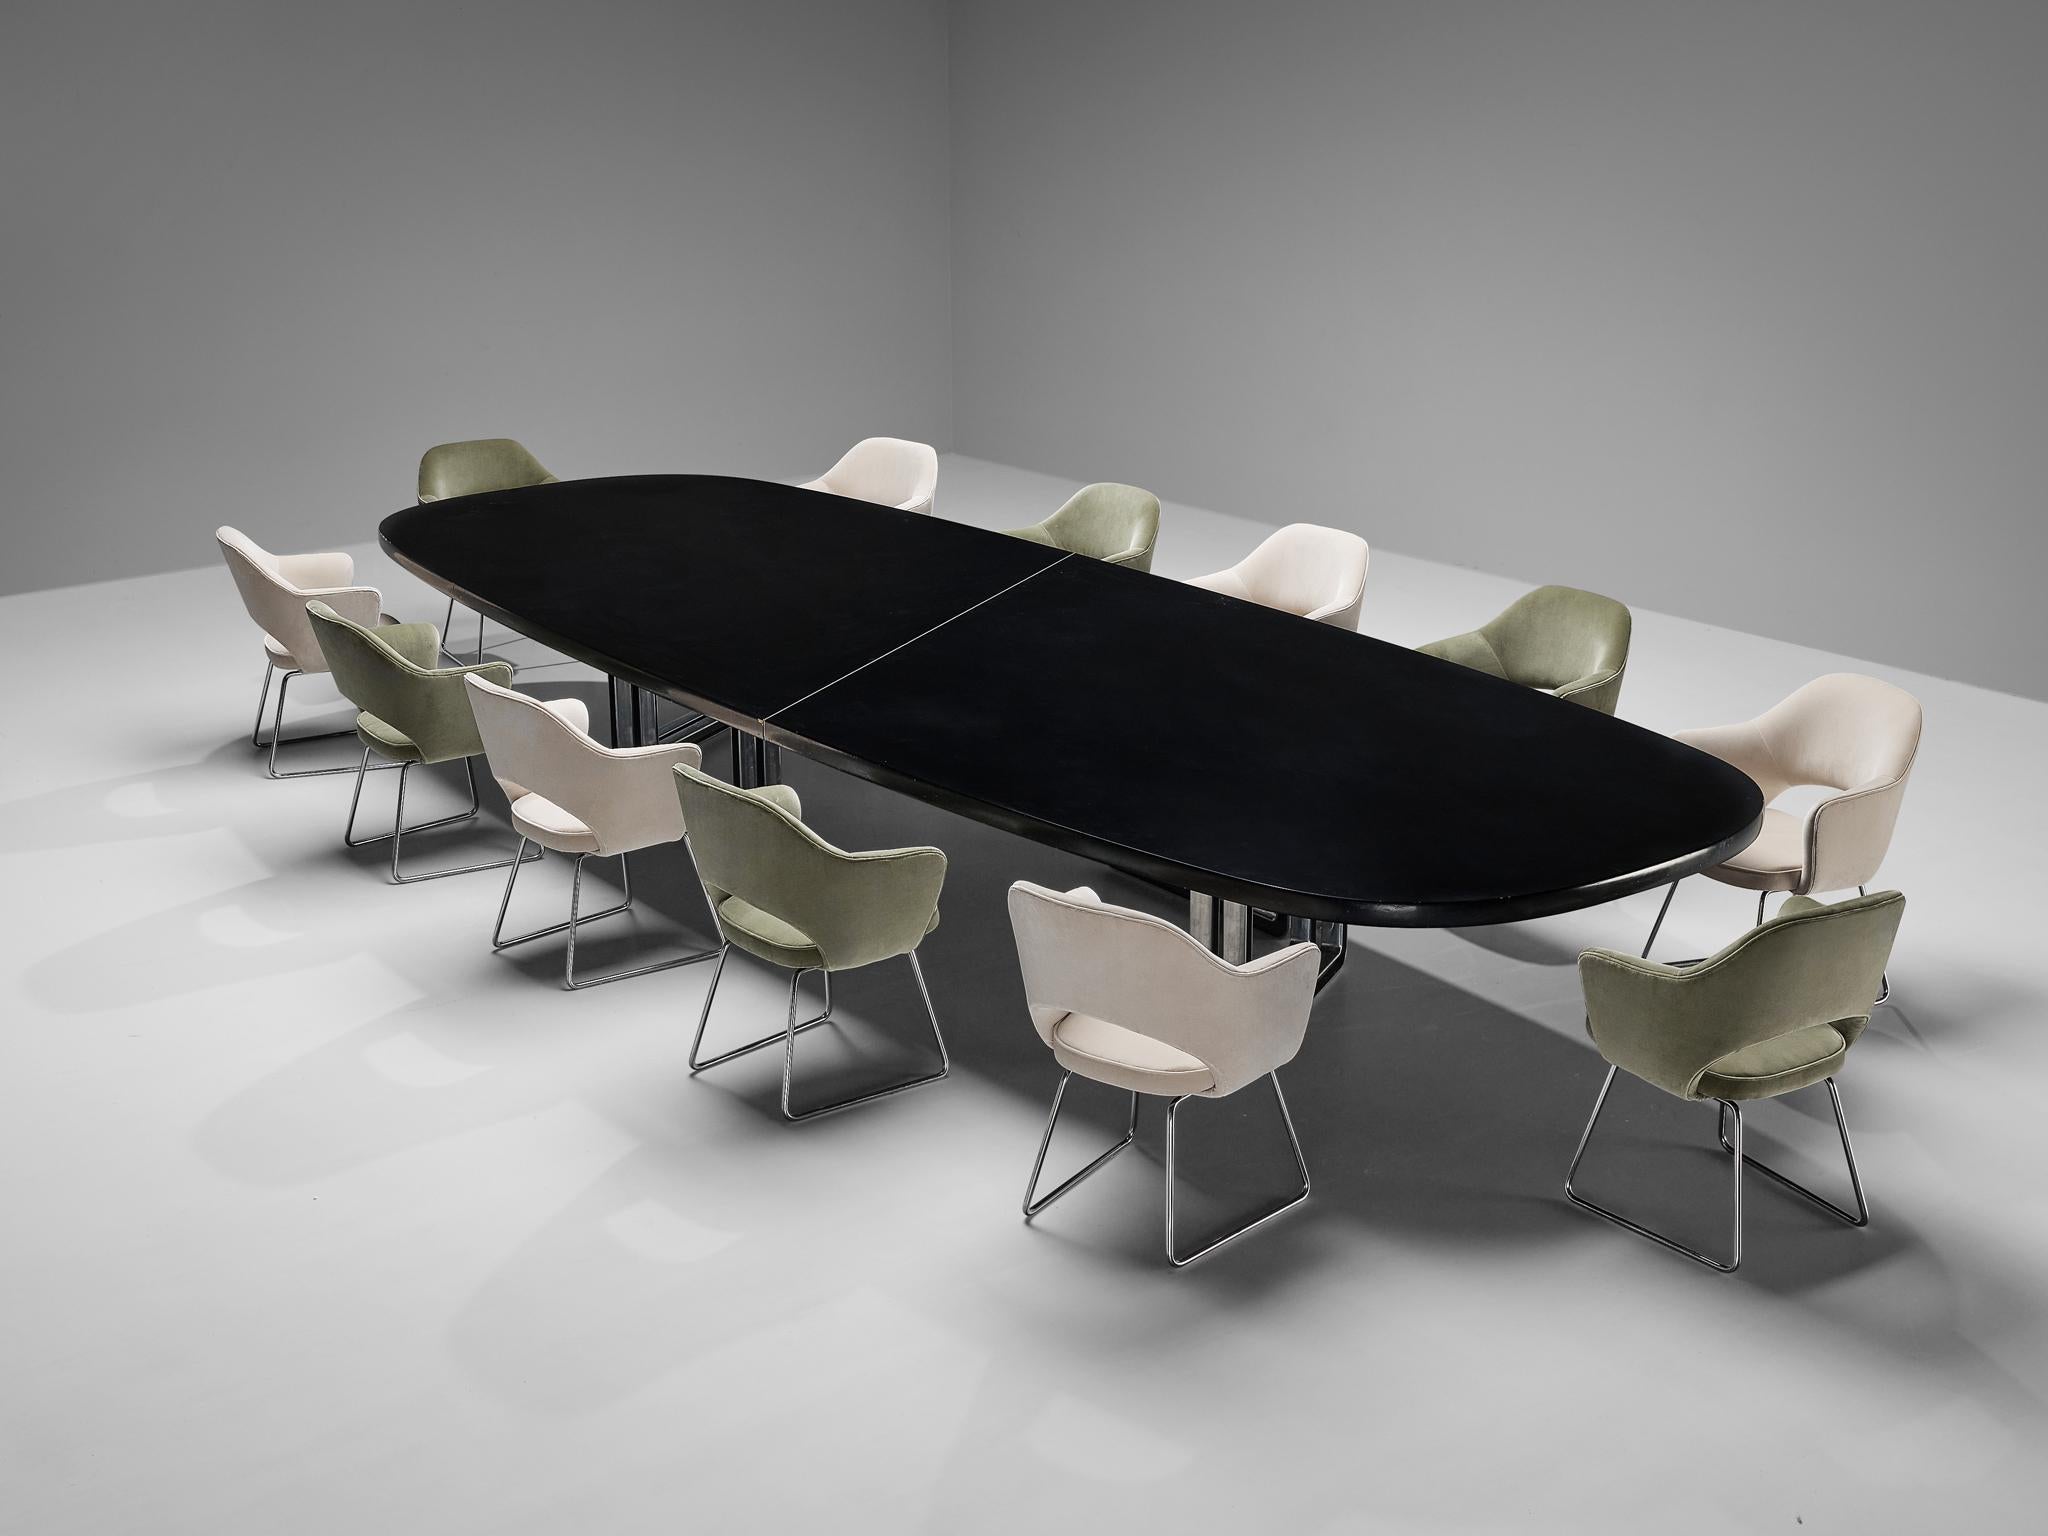 Centro Progetti Tecno, table de salle à manger ou de conférence modèle 'T335', bois laqué, aluminium, Italie, 1975-1978

Grande table de salle à manger ou de conférence avec un plateau en bois laqué noir à la texture incroyablement douce. La table